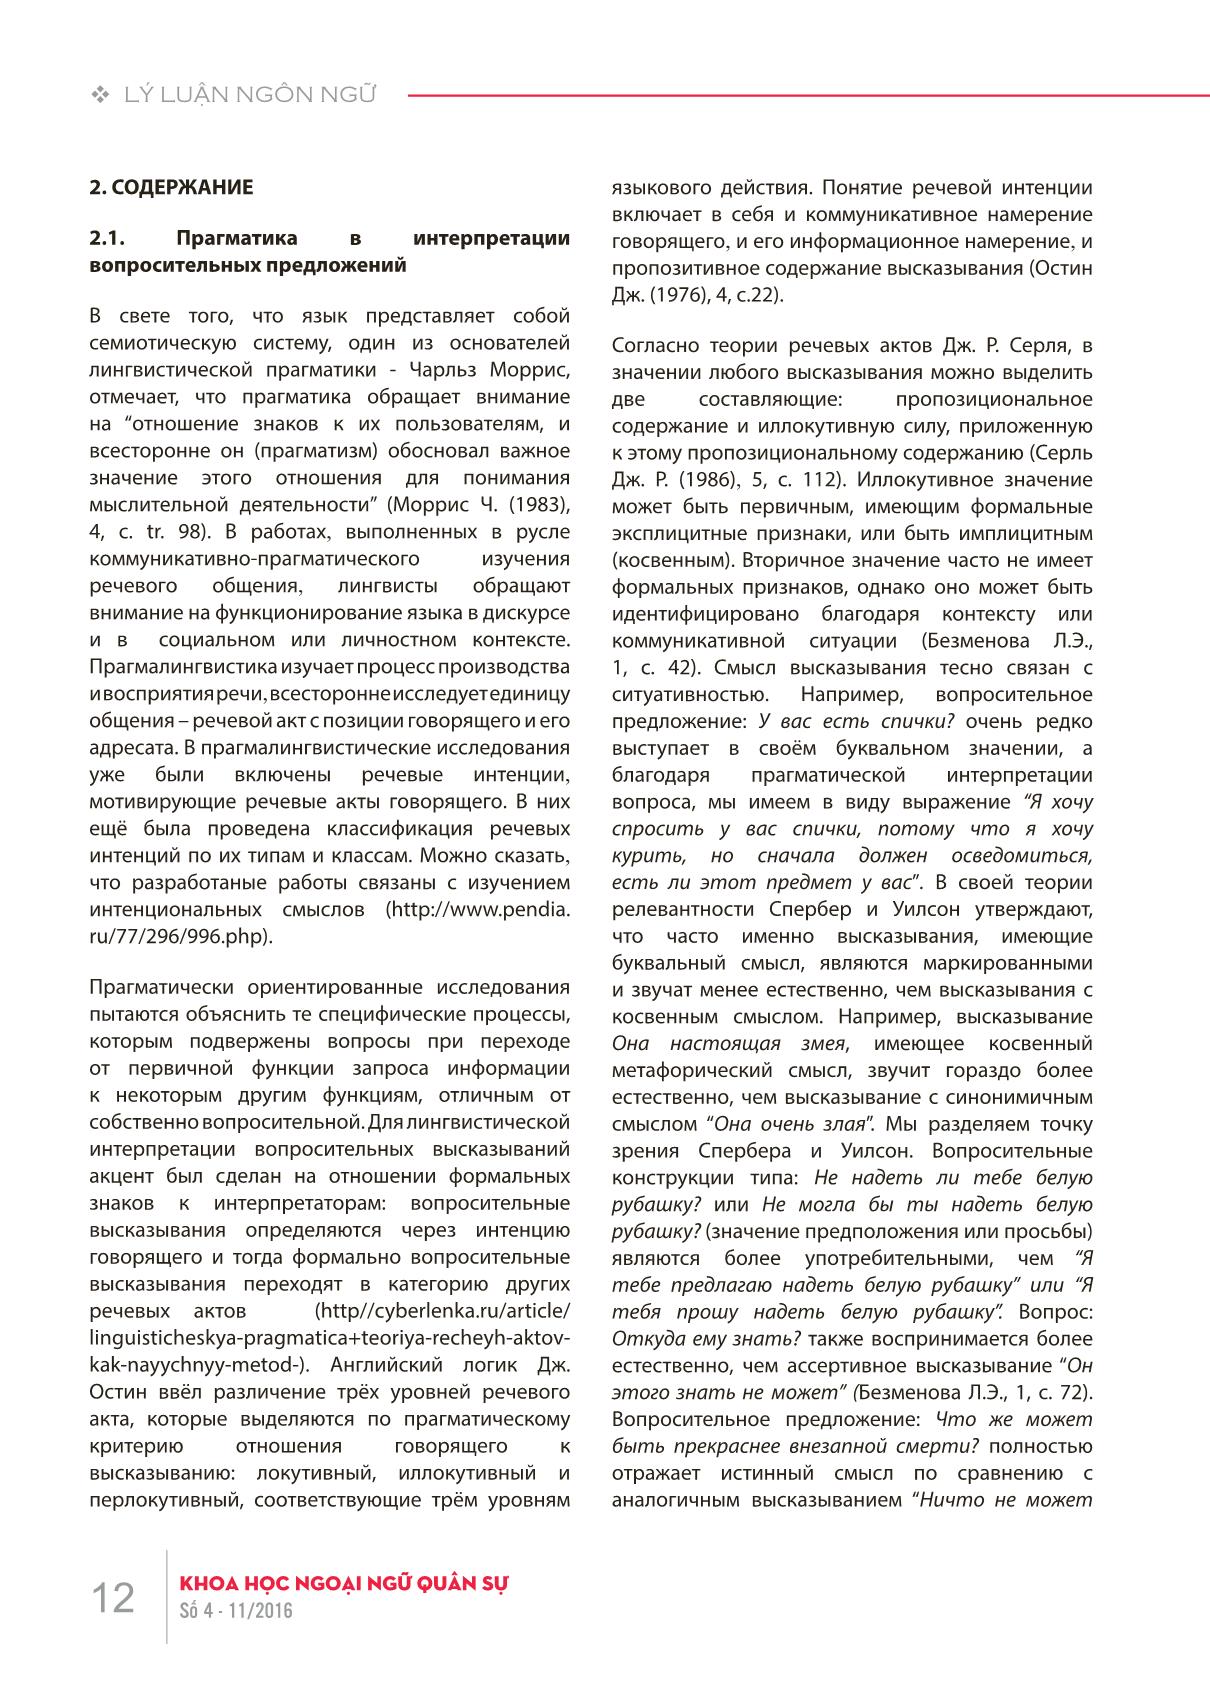 Bình diện ngữ dụng của câu nghi vấn trong tiếng Nga trang 2